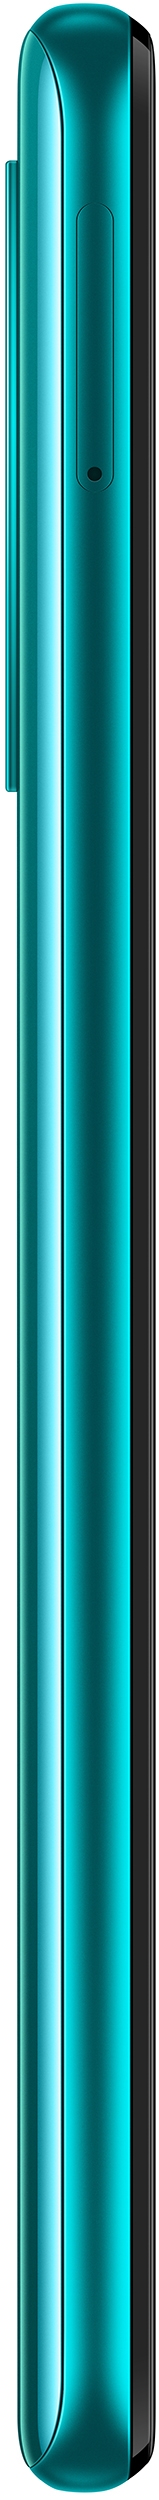 Huawei P smart (2021)